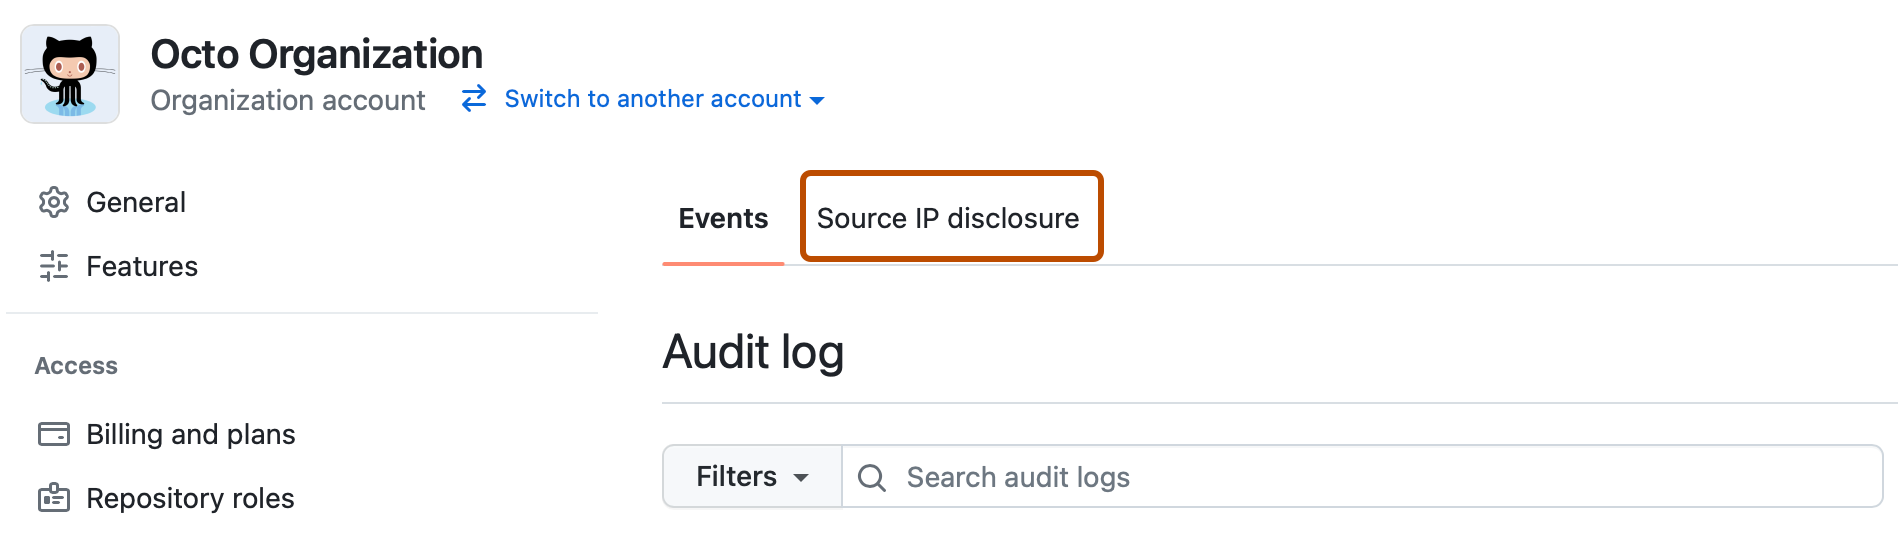 Captura de pantalla de la página "Registro de auditoría" de una organización. Una pestaña, con la etiqueta "Divulgación de direcciones IP de origen", se destaca en naranja oscuro.